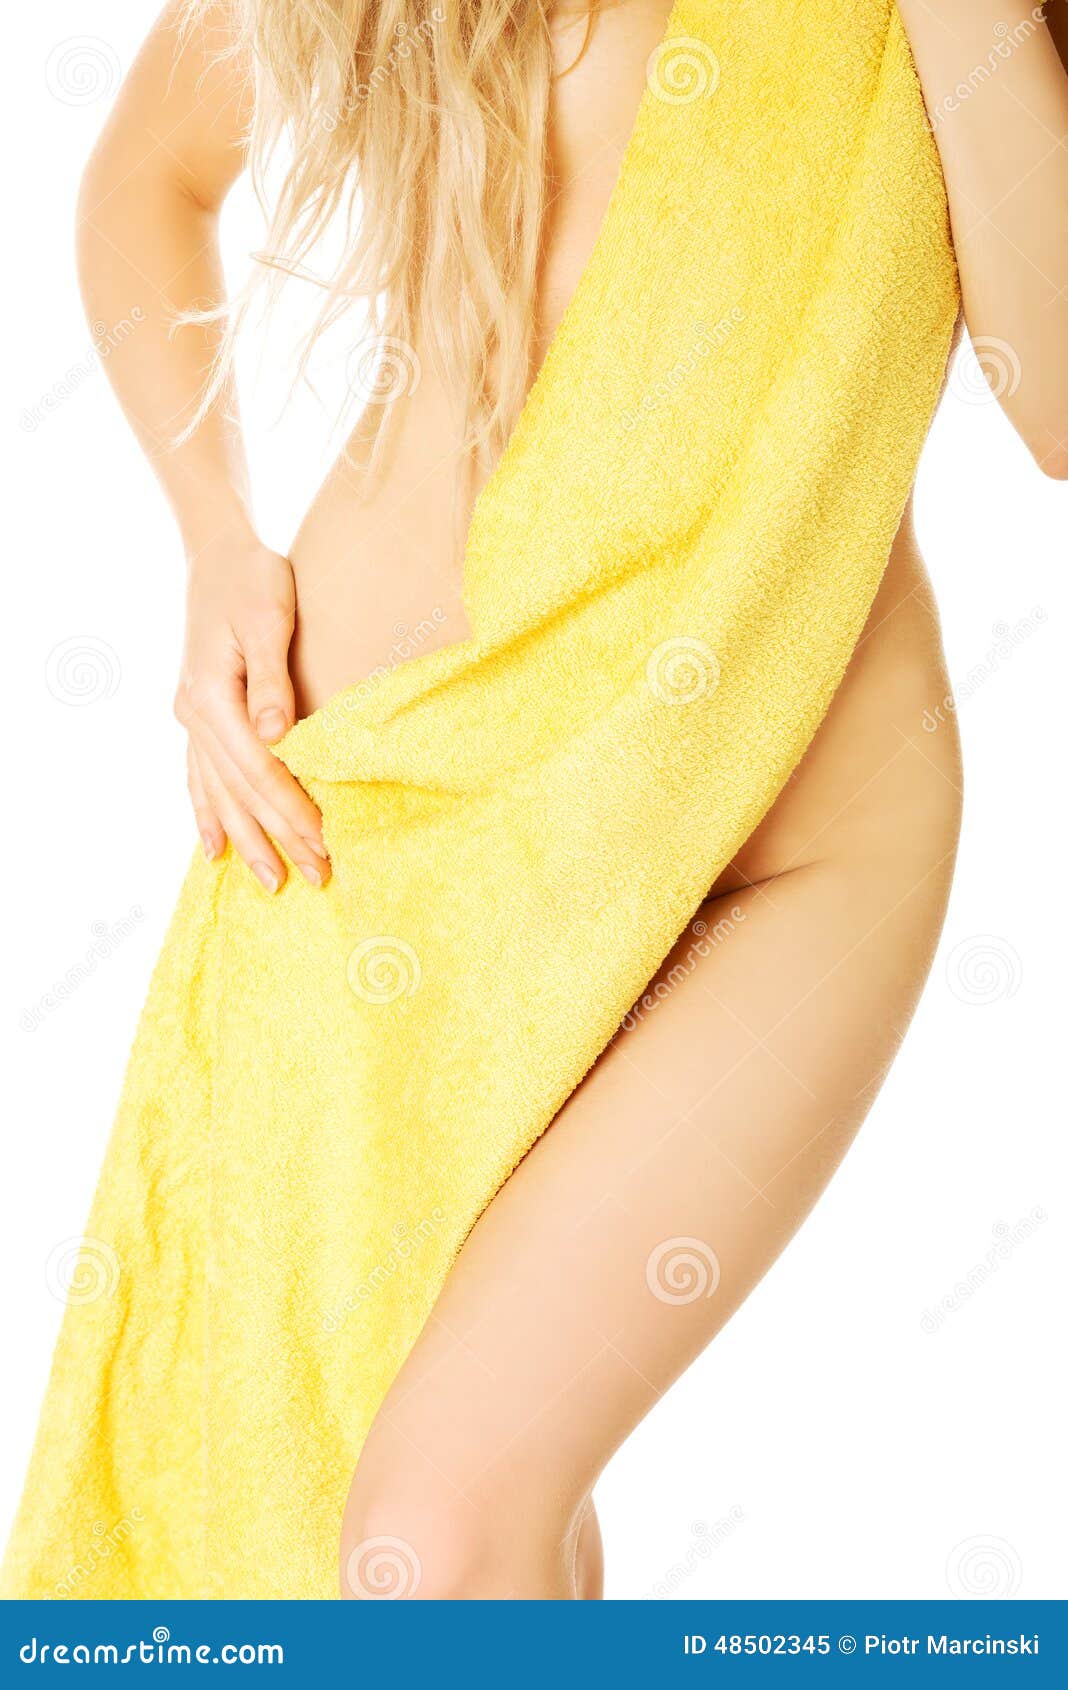 Слетело полотенце. Девушка завернутая в полотенце. Женщина в одном полотенце. Женское тело в полотенце. Девушка замотанная в полотенце.